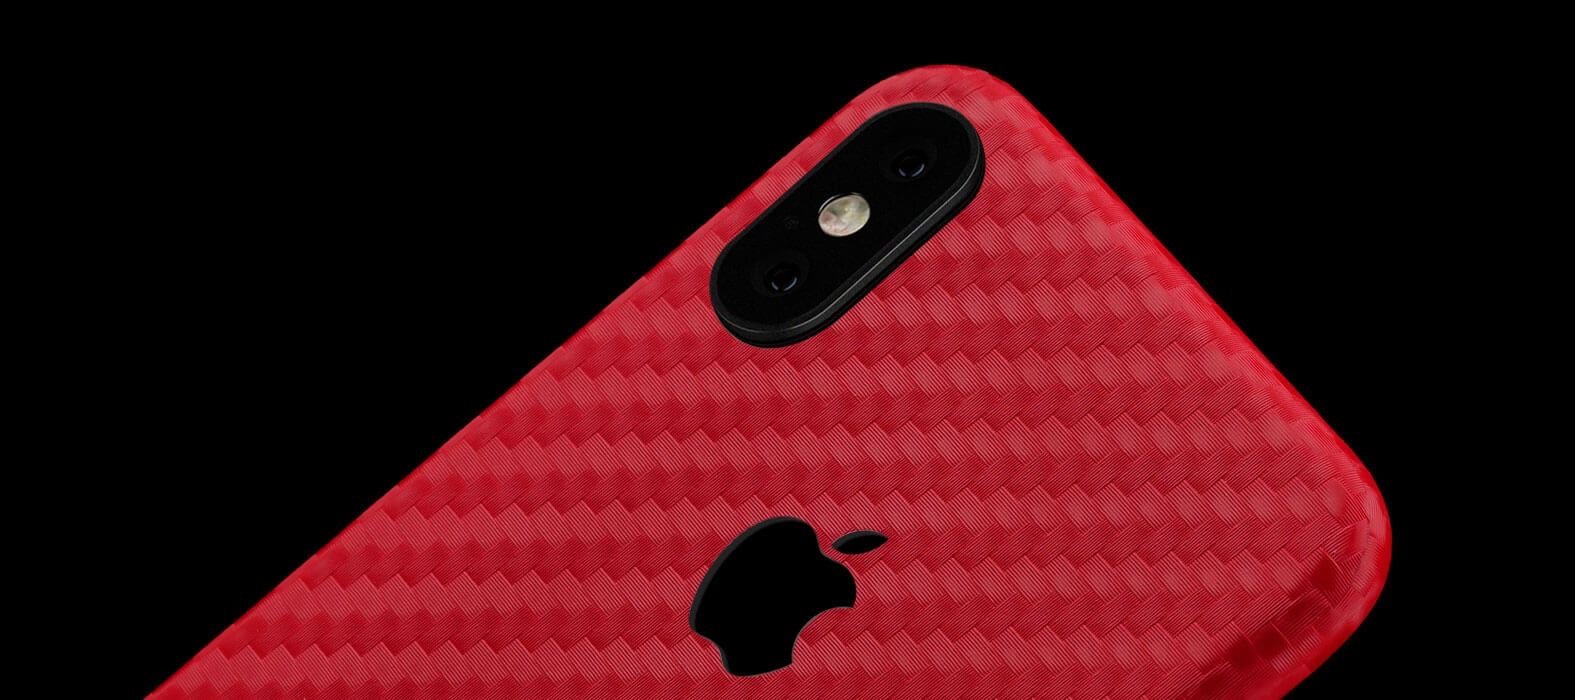 Iphone Skin - Skin IPhone - Carbon Rosu 3D